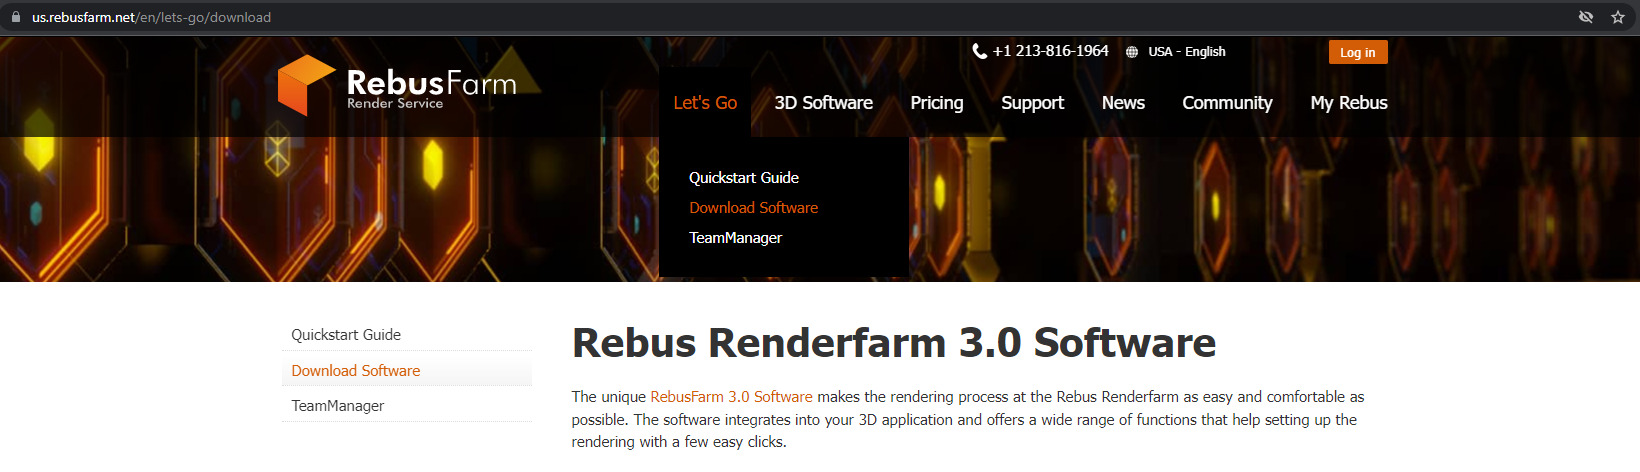 rebus farm rebus software download